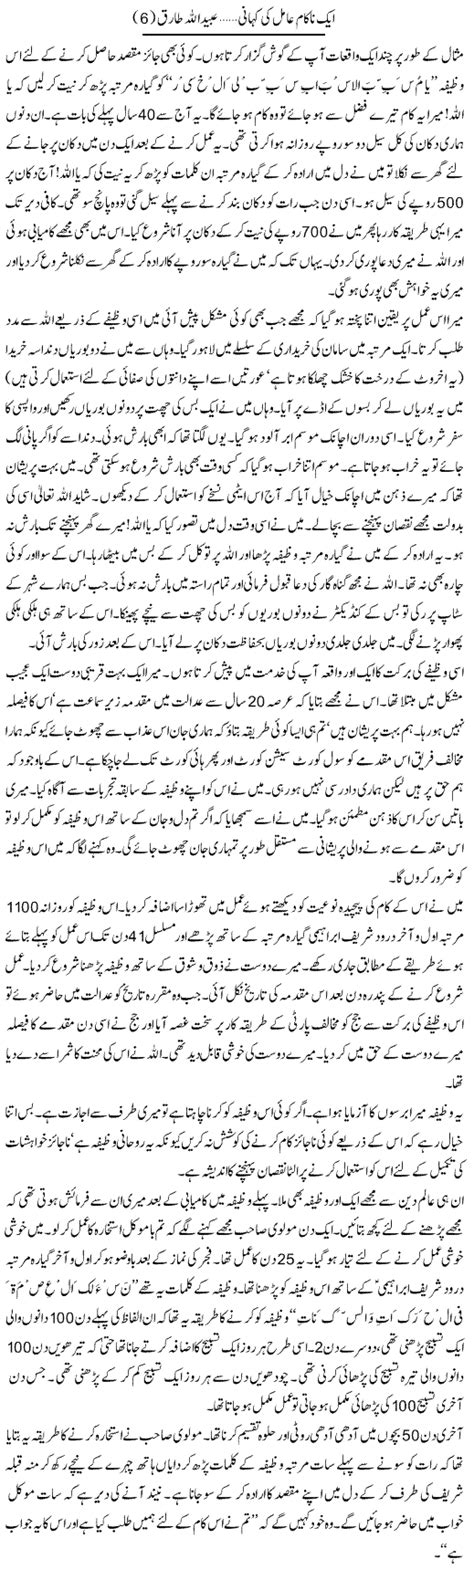 Urdu Hangama October 2011